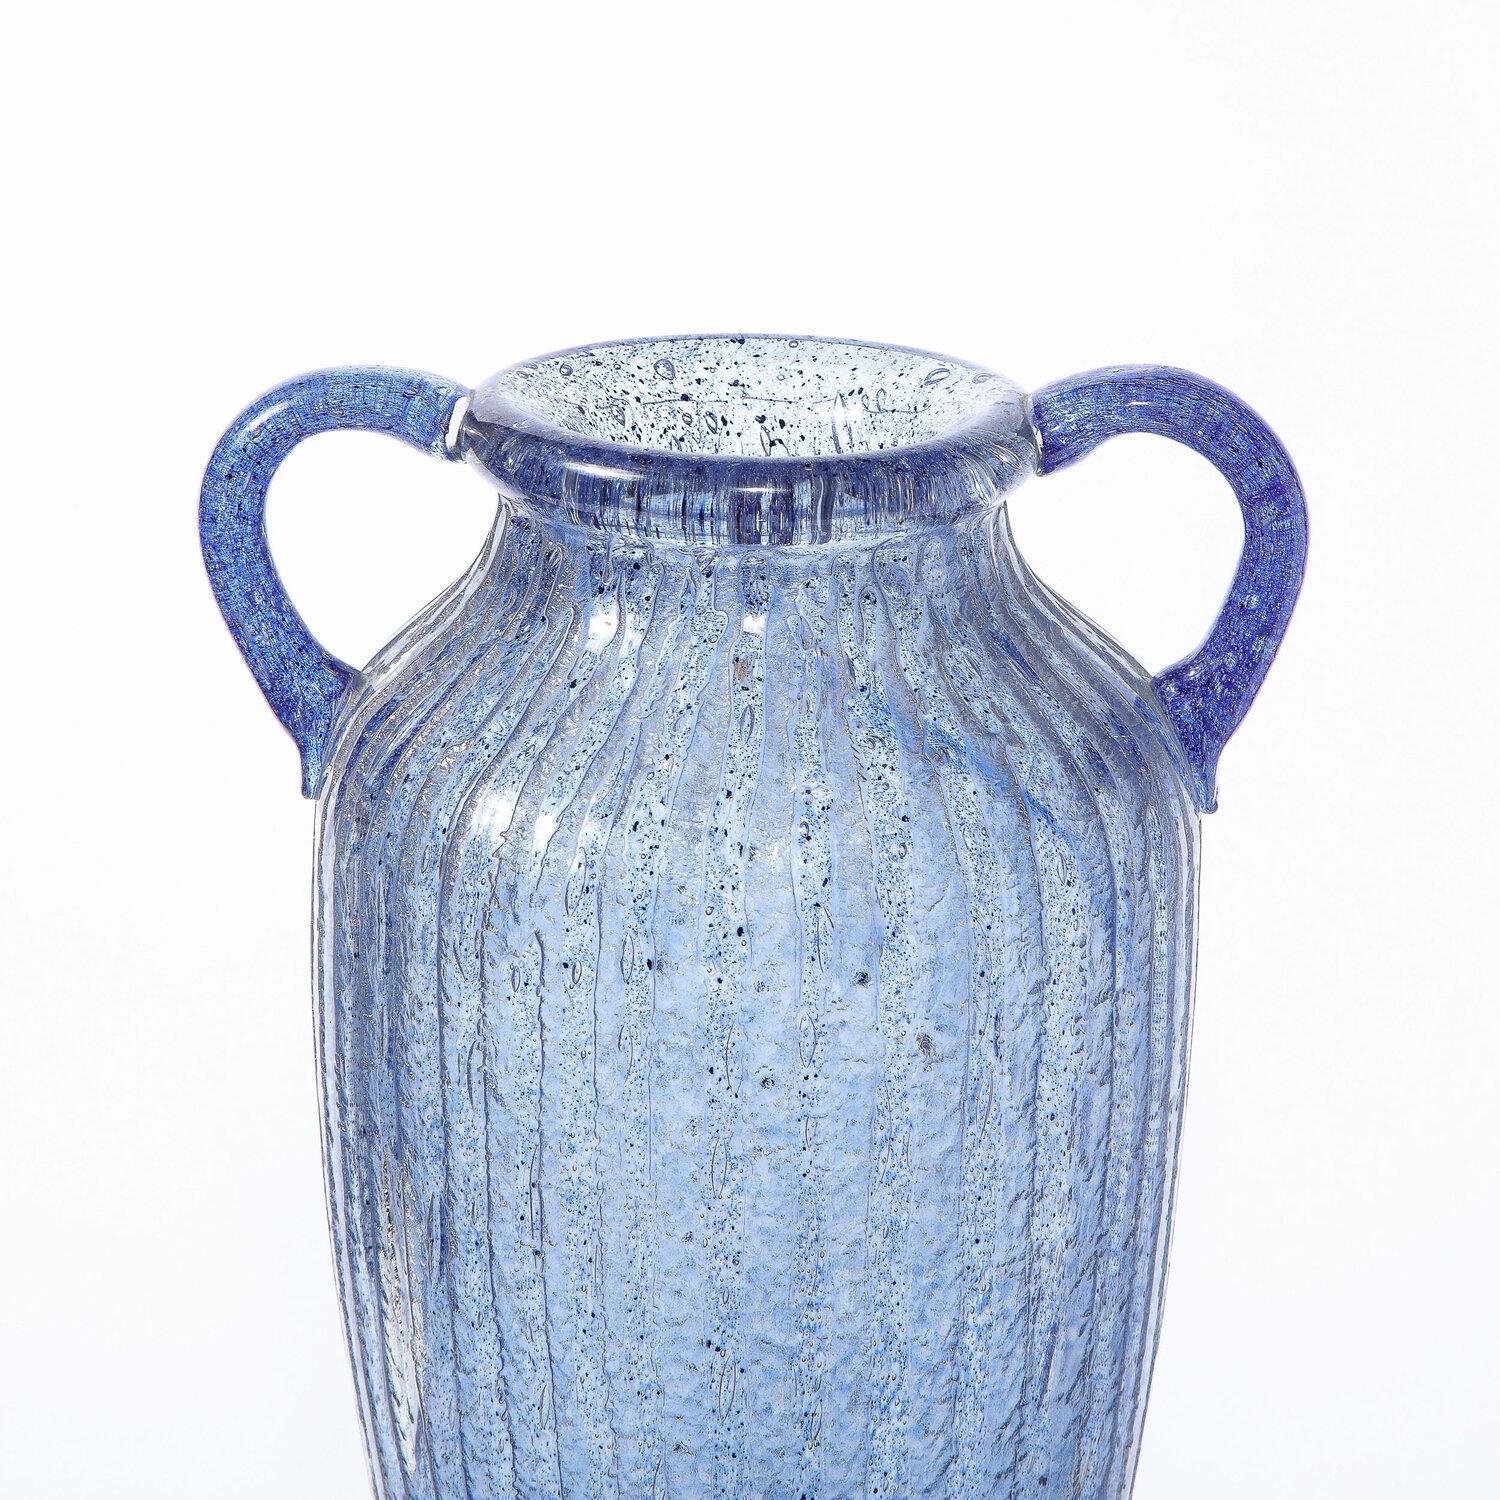 Ce vase amphore raffiné de style Art déco a été réalisé et signé Nancy Daum en France vers 1925. Il présente un corps ondulé flanqué sur le col de deux poignées arrondies, le tout en verre lilas tacheté enveloppé d'un extérieur en verre translucide